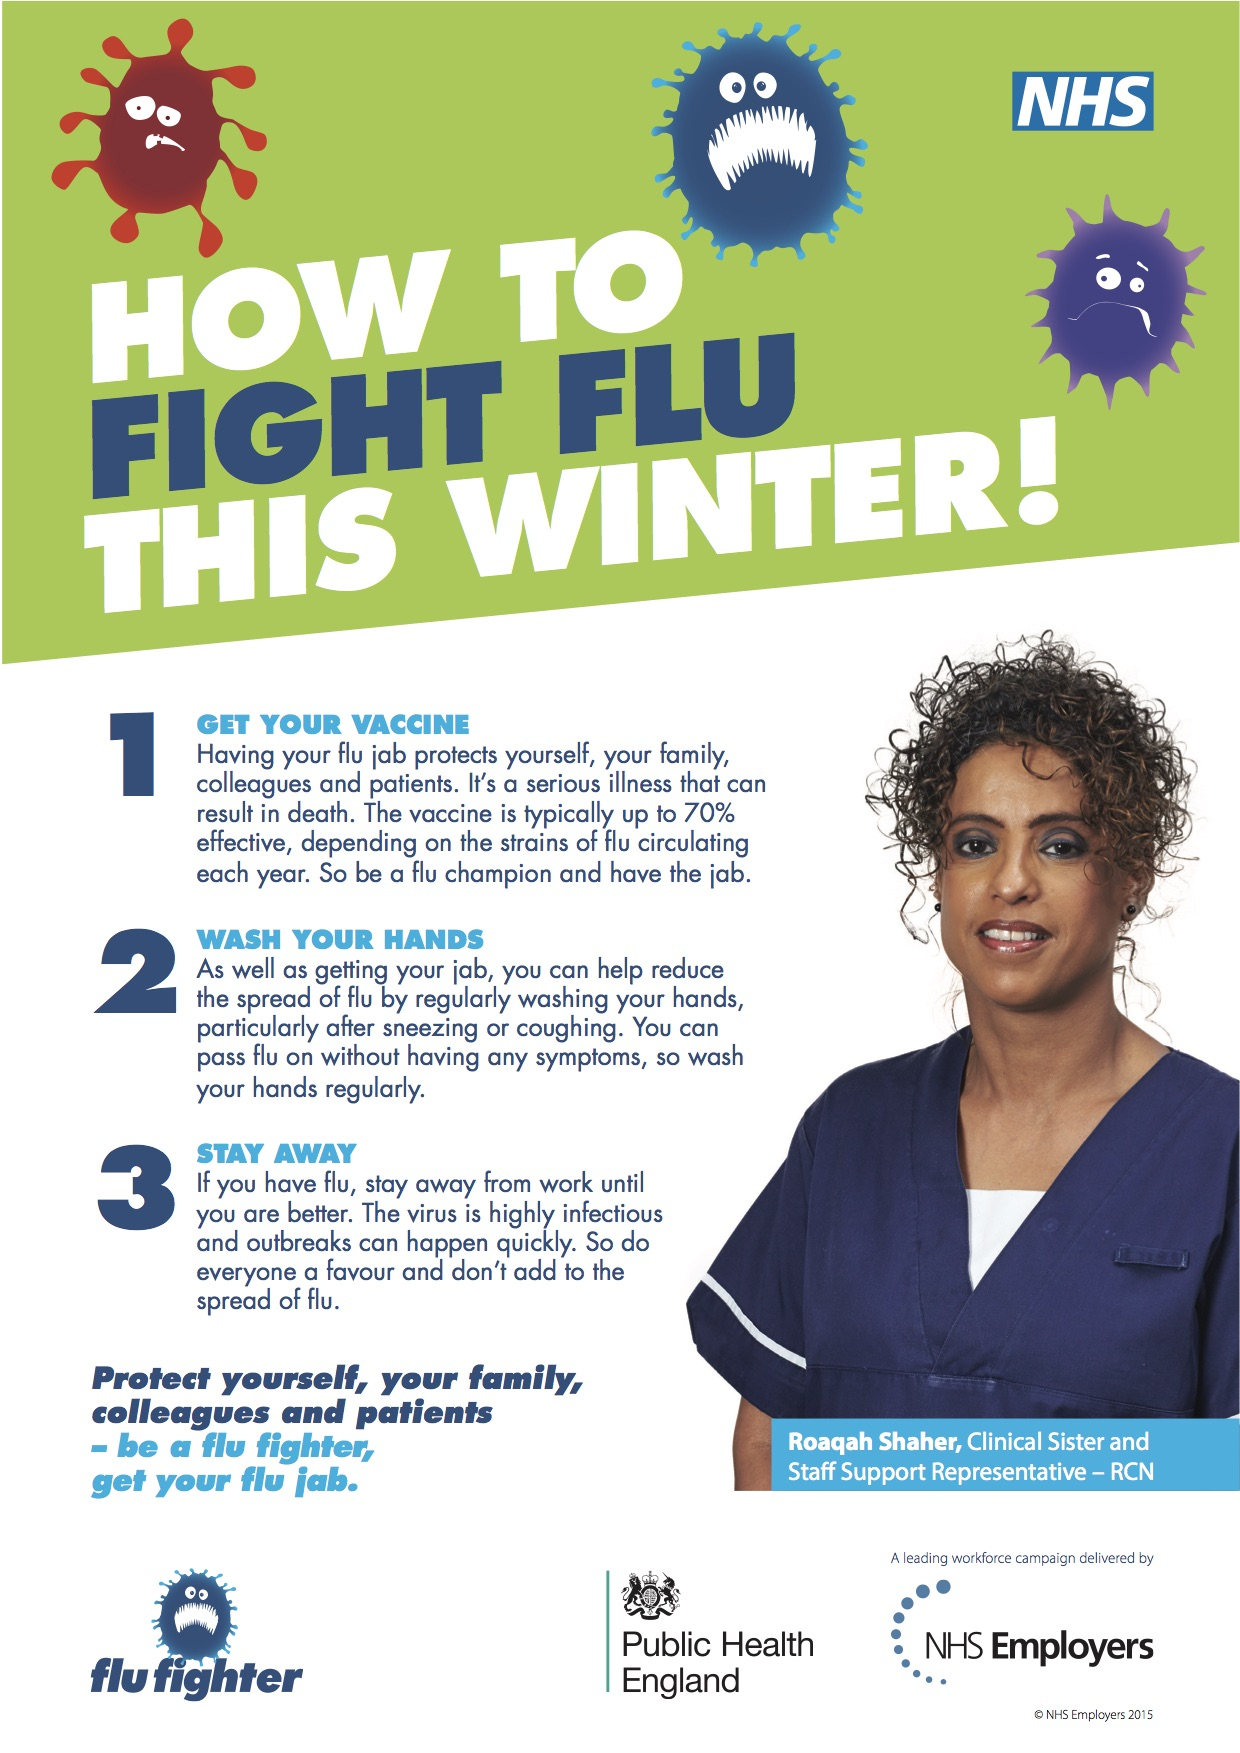 Free Printable Flu Posters Printable World Holiday